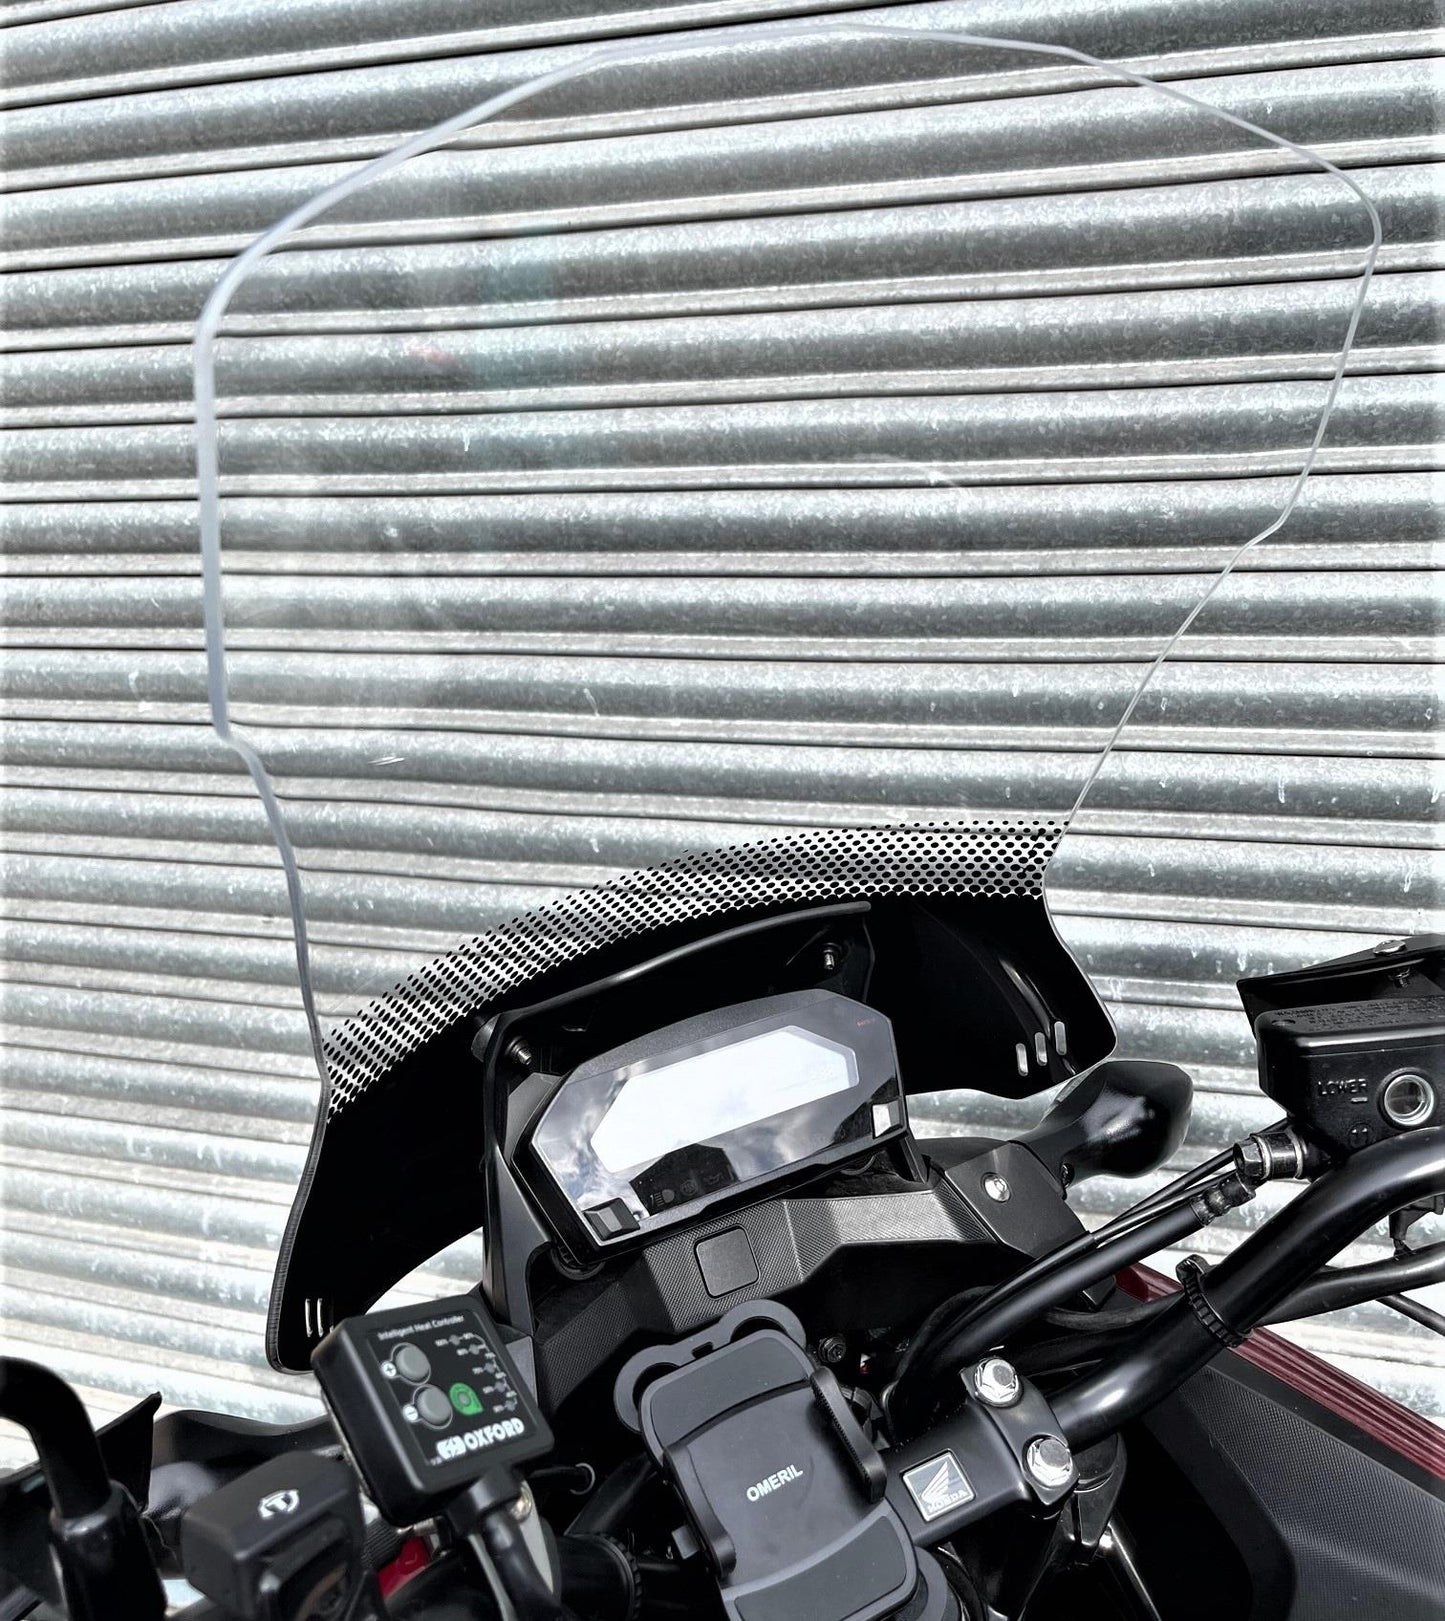 Honda NC750X touring windscreen 165 mm taller clear 16-20